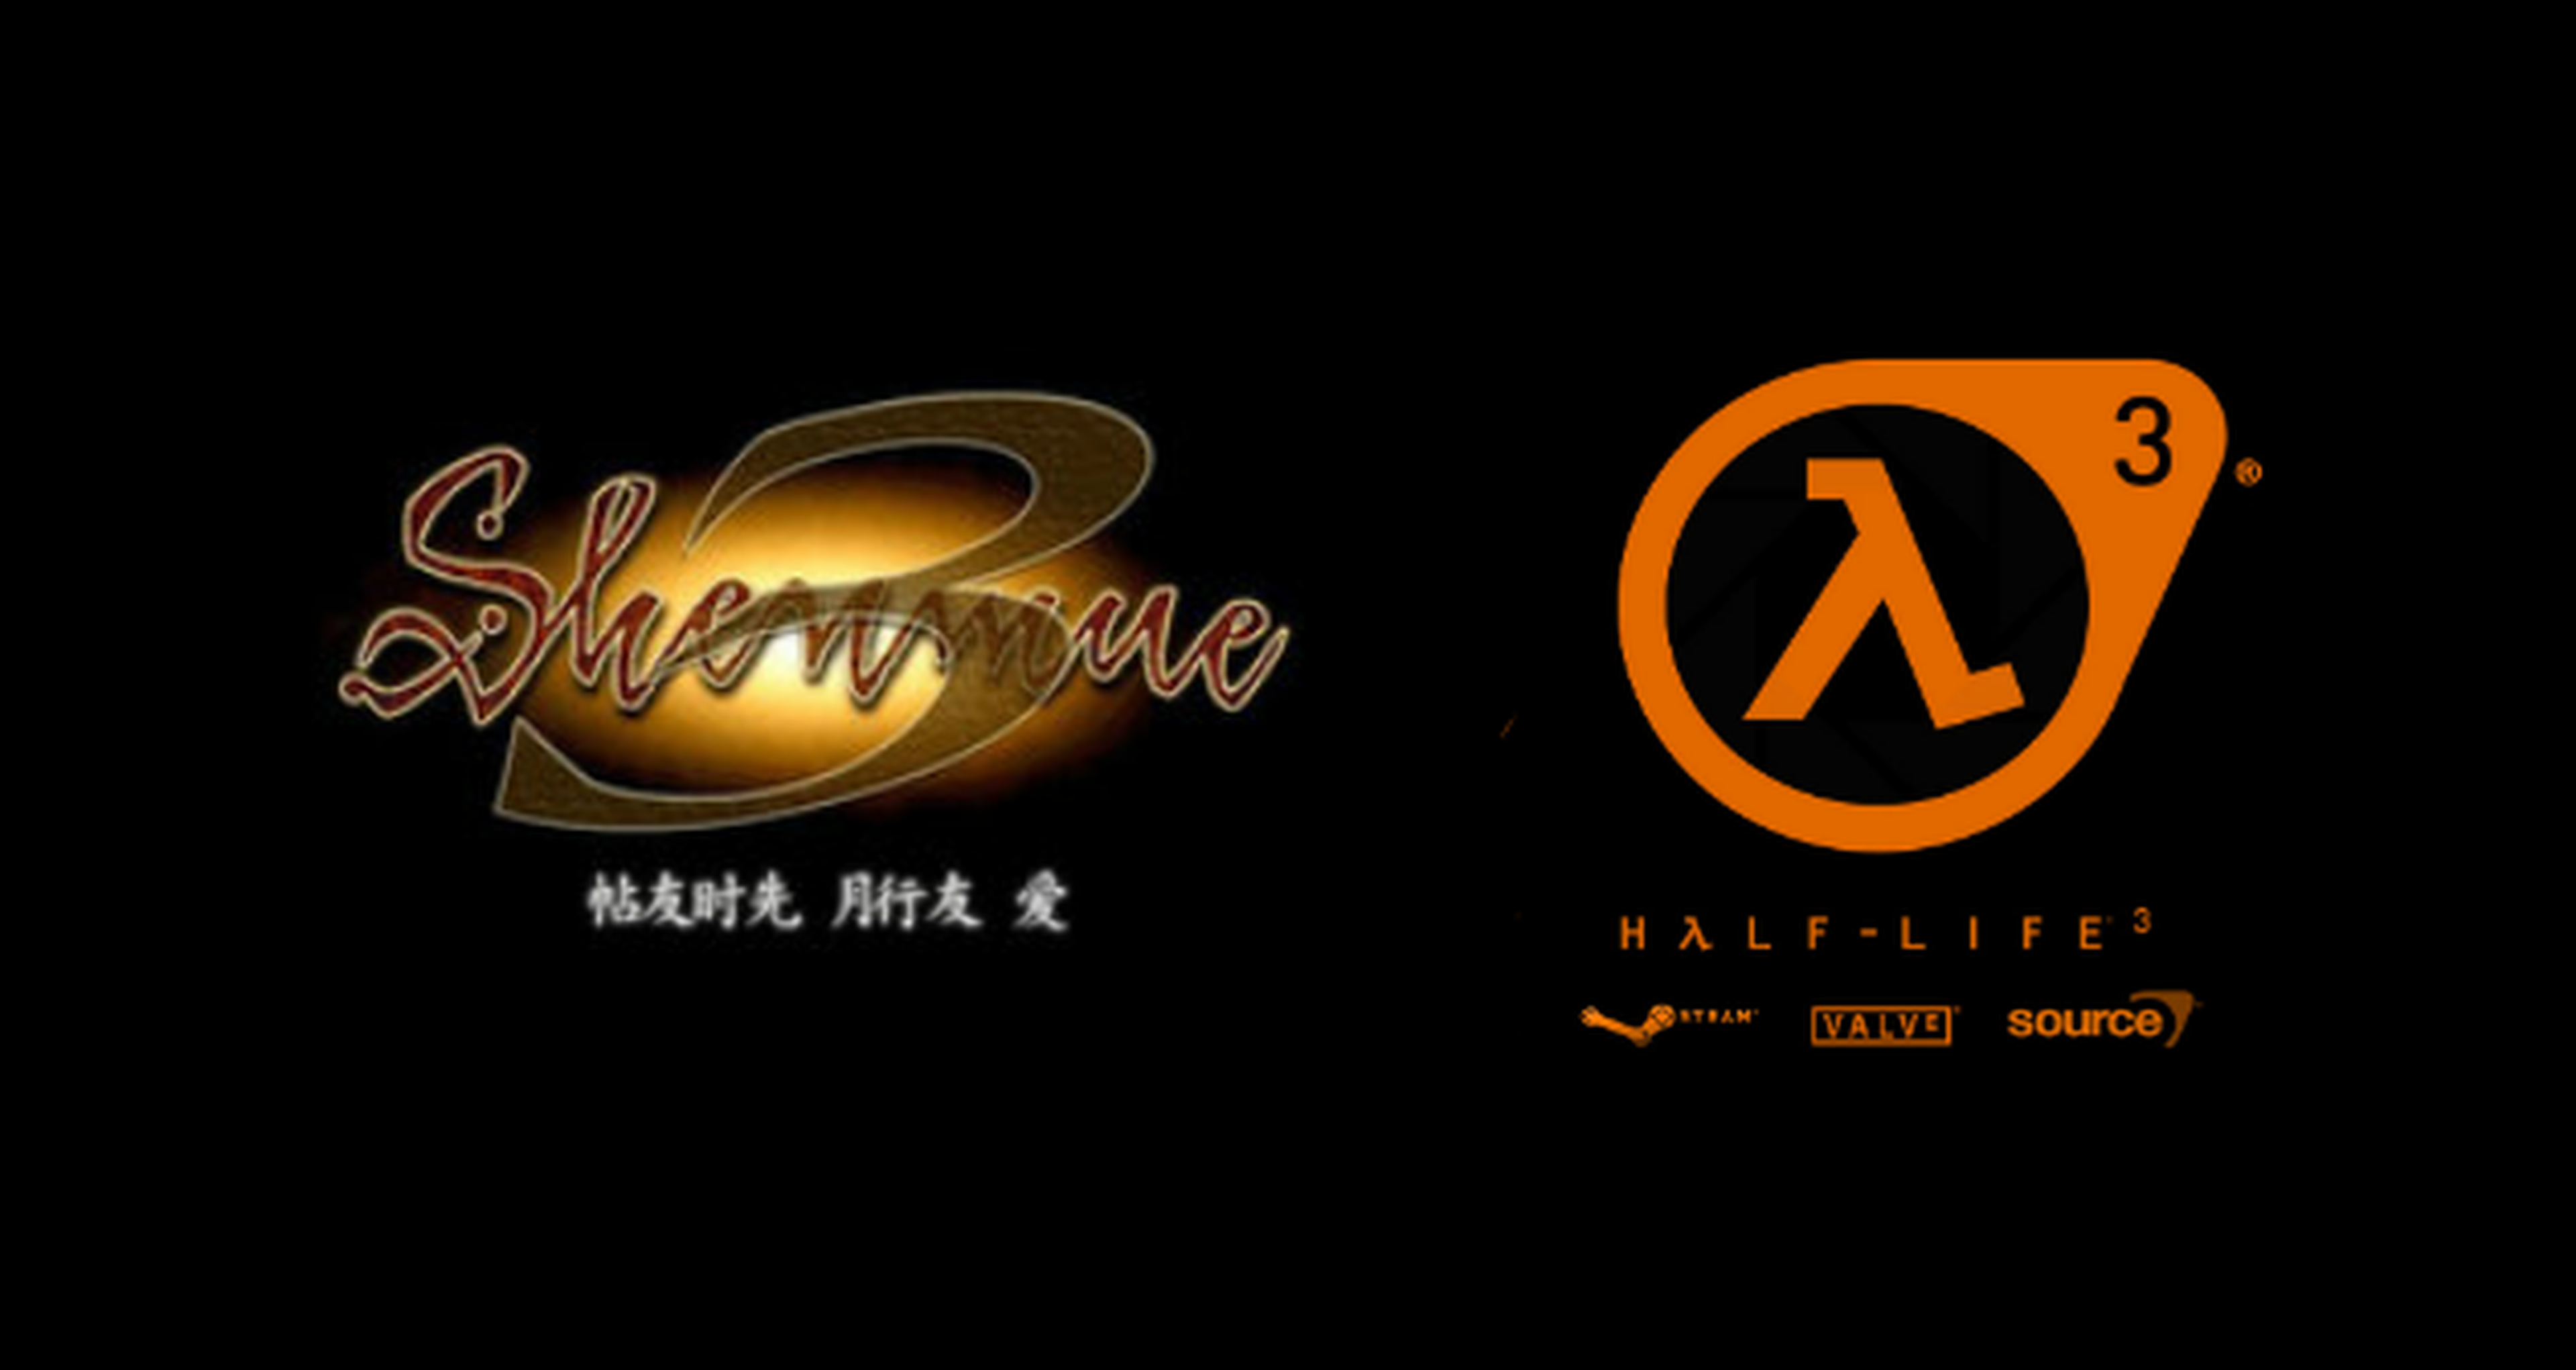 PS4 por 20 euros al mes, Half-Life 3... Las noticias de la semana: 25/05/14